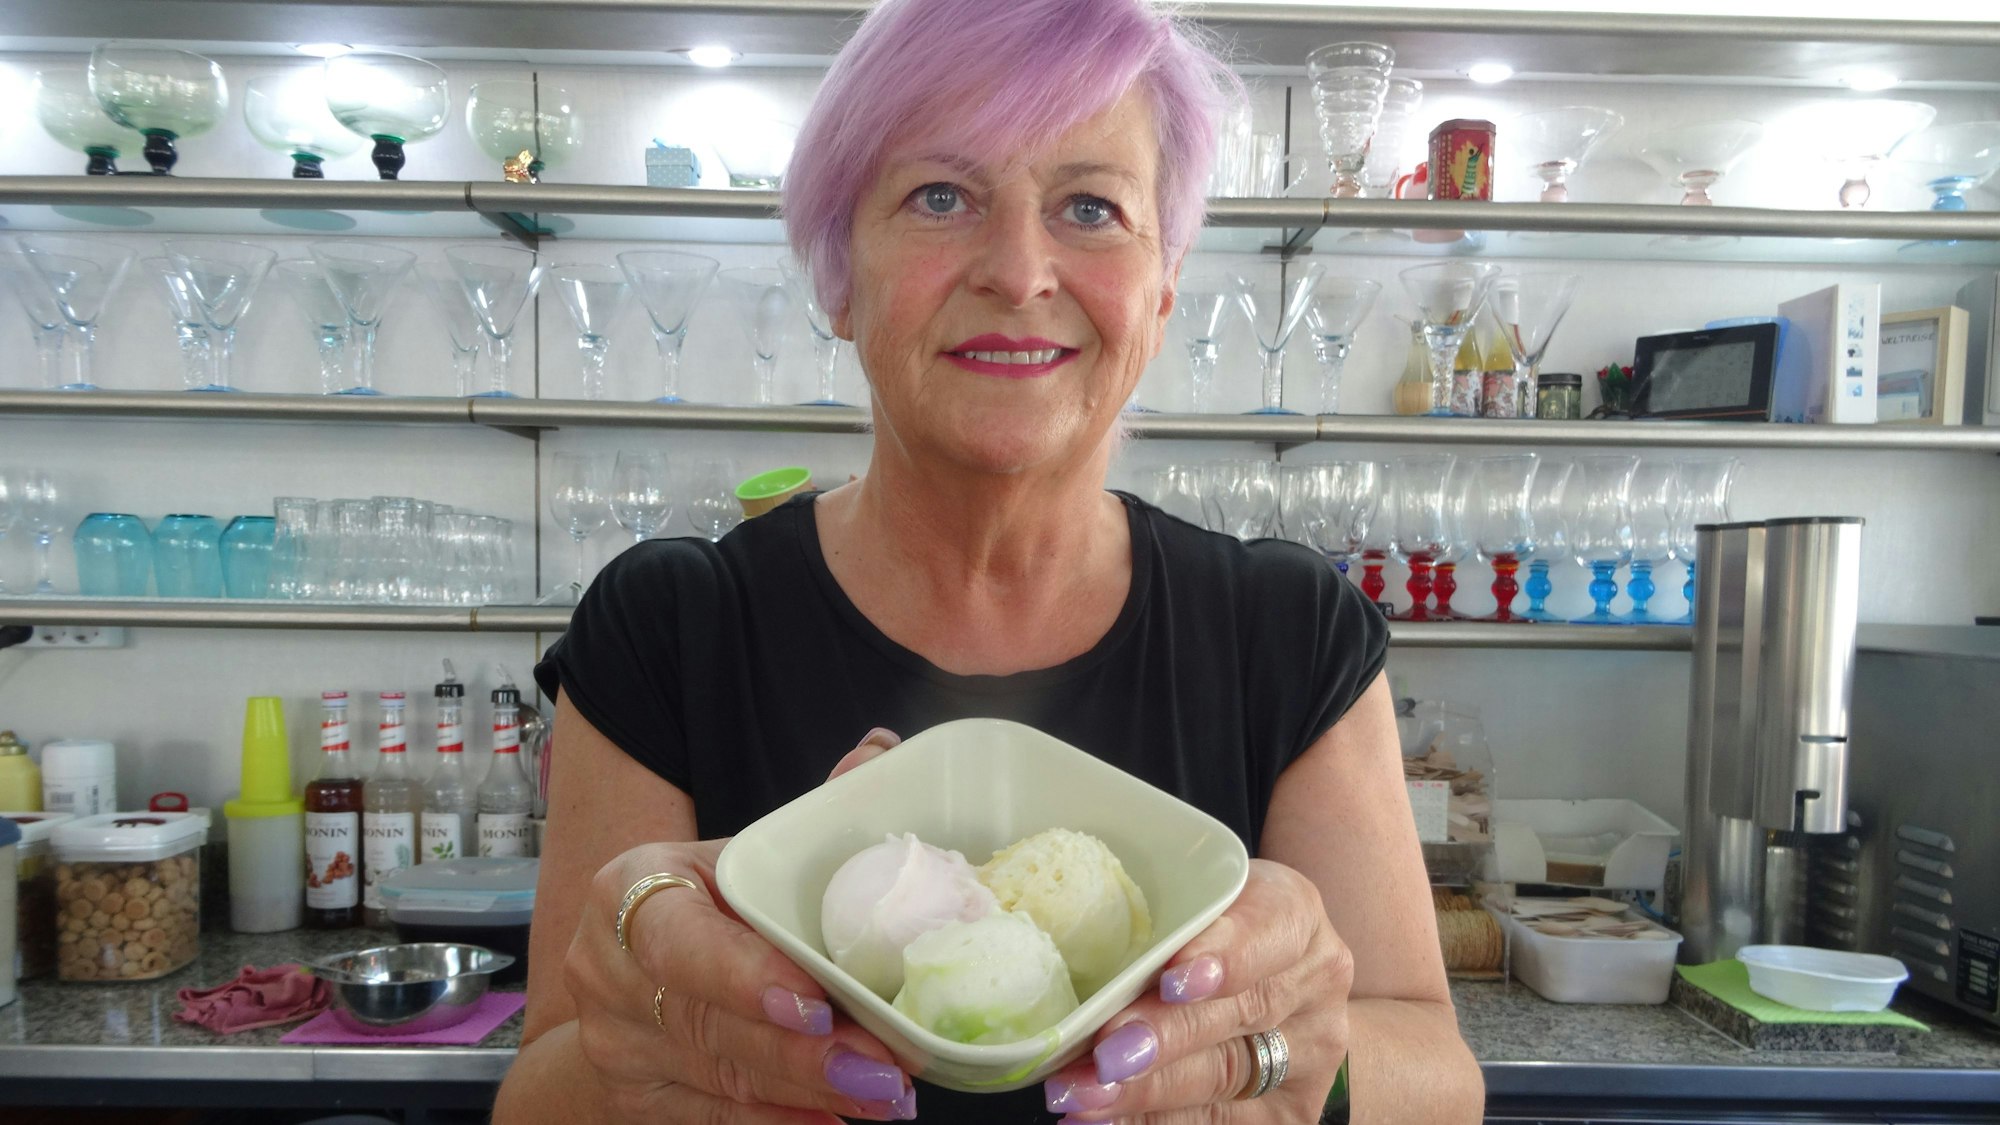 Luciana De Ronch, Chefin des Eiscafés Fontanella in Troisdorf, hält einen Eisbecher lächelnd in Richtung der Kamera.